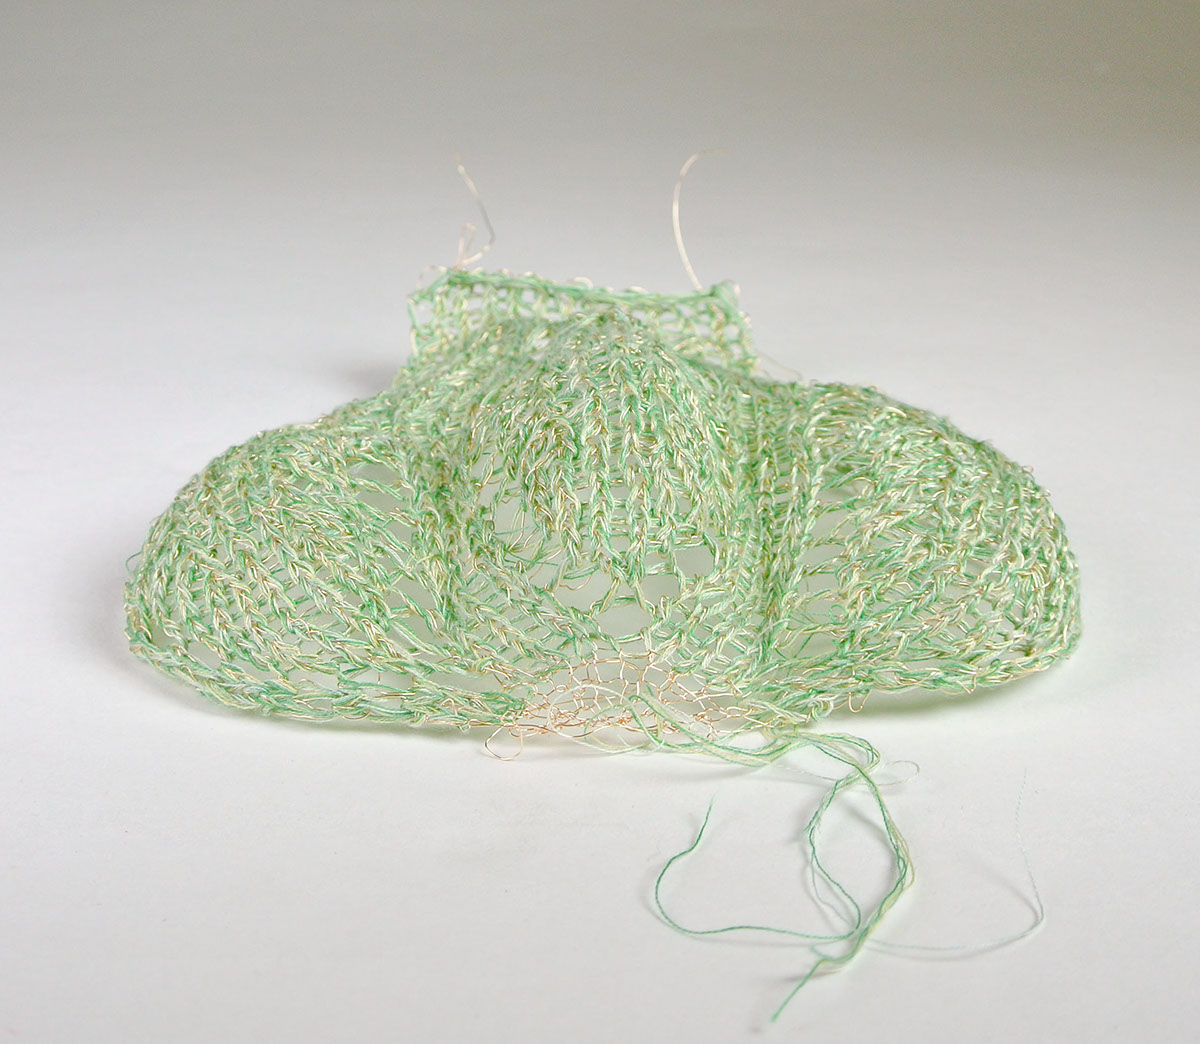 3D Textiles '3d textiles' knitting sculpture 'hand knitting' art yarn 'knitsculpture' 'fiber arts'